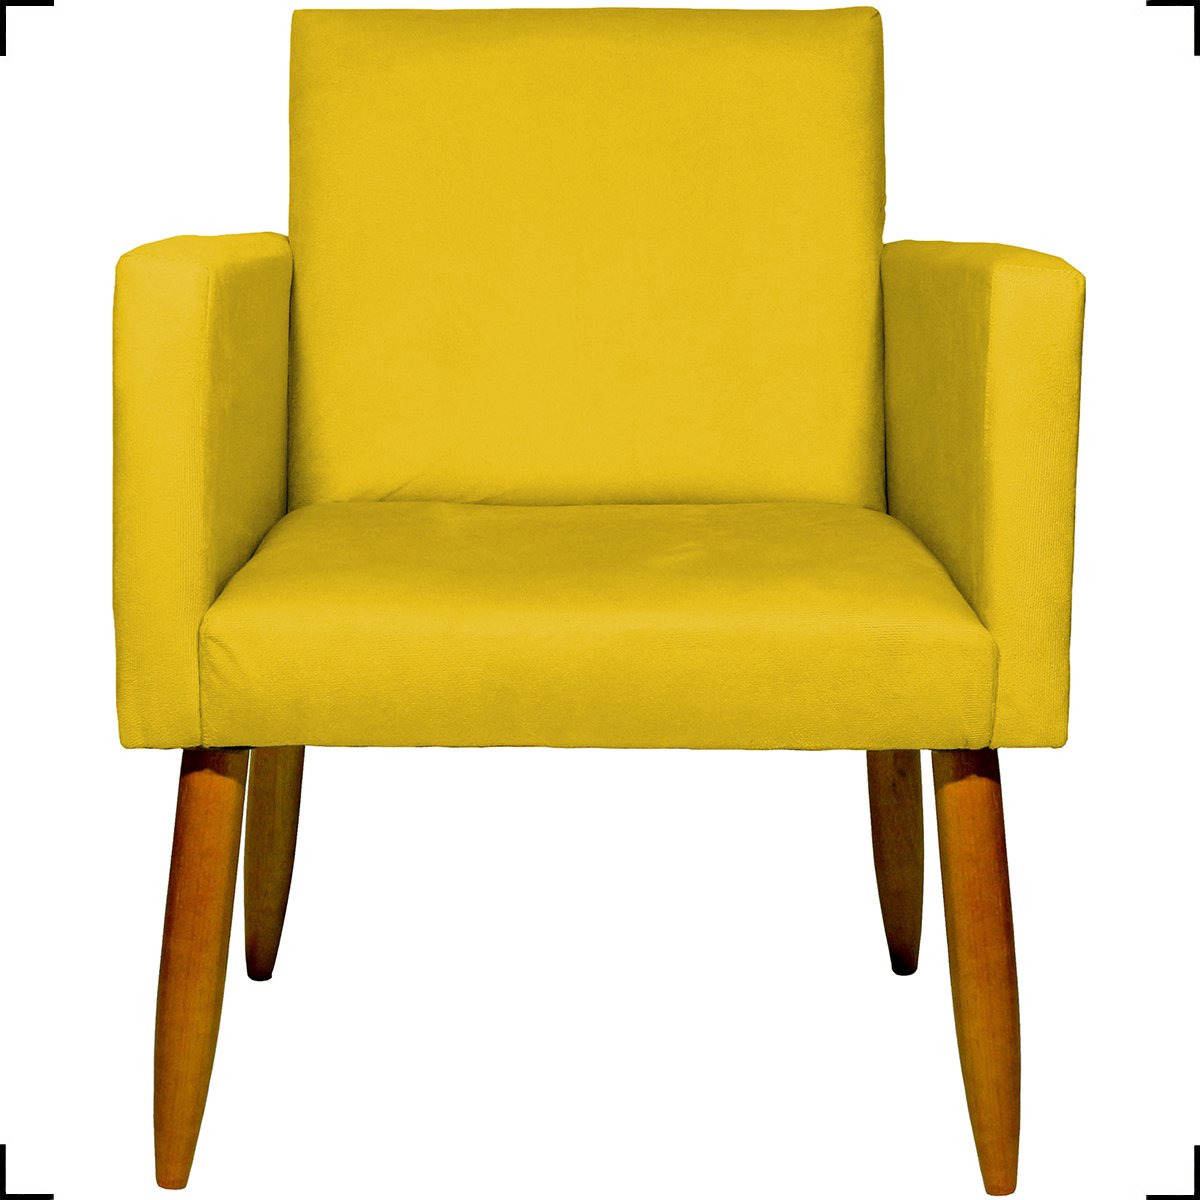 Kit 03 Poltronas Decorativas Para Sala Cadeiras Reforçadas Para Sala De Espera Suede Amarelo - 3